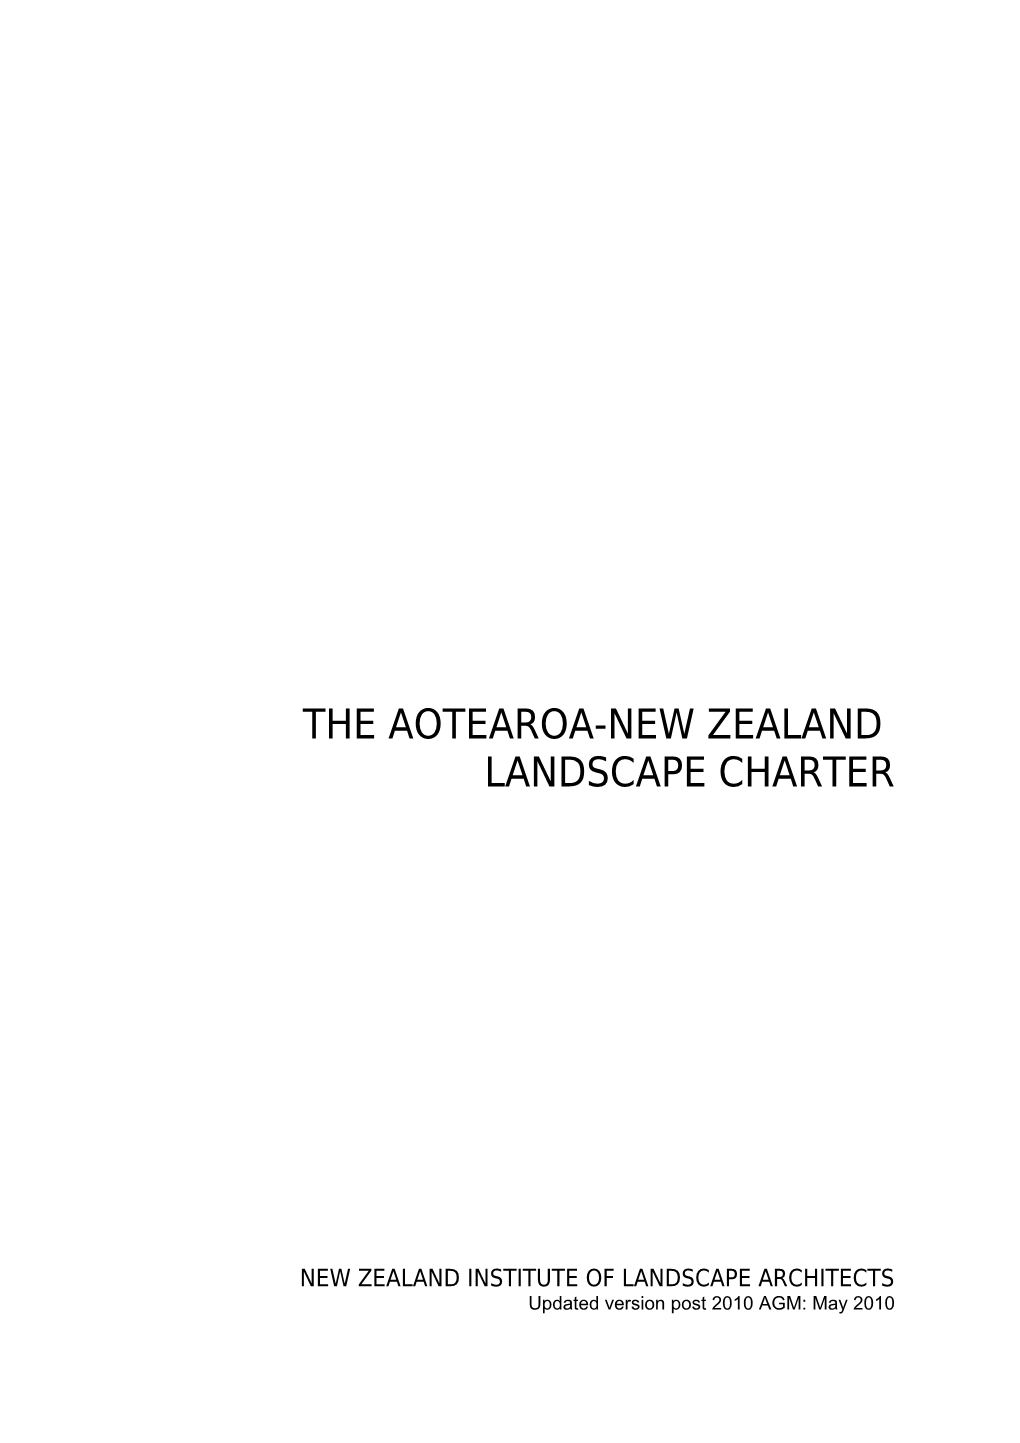 The Aotearoa/New Zealand